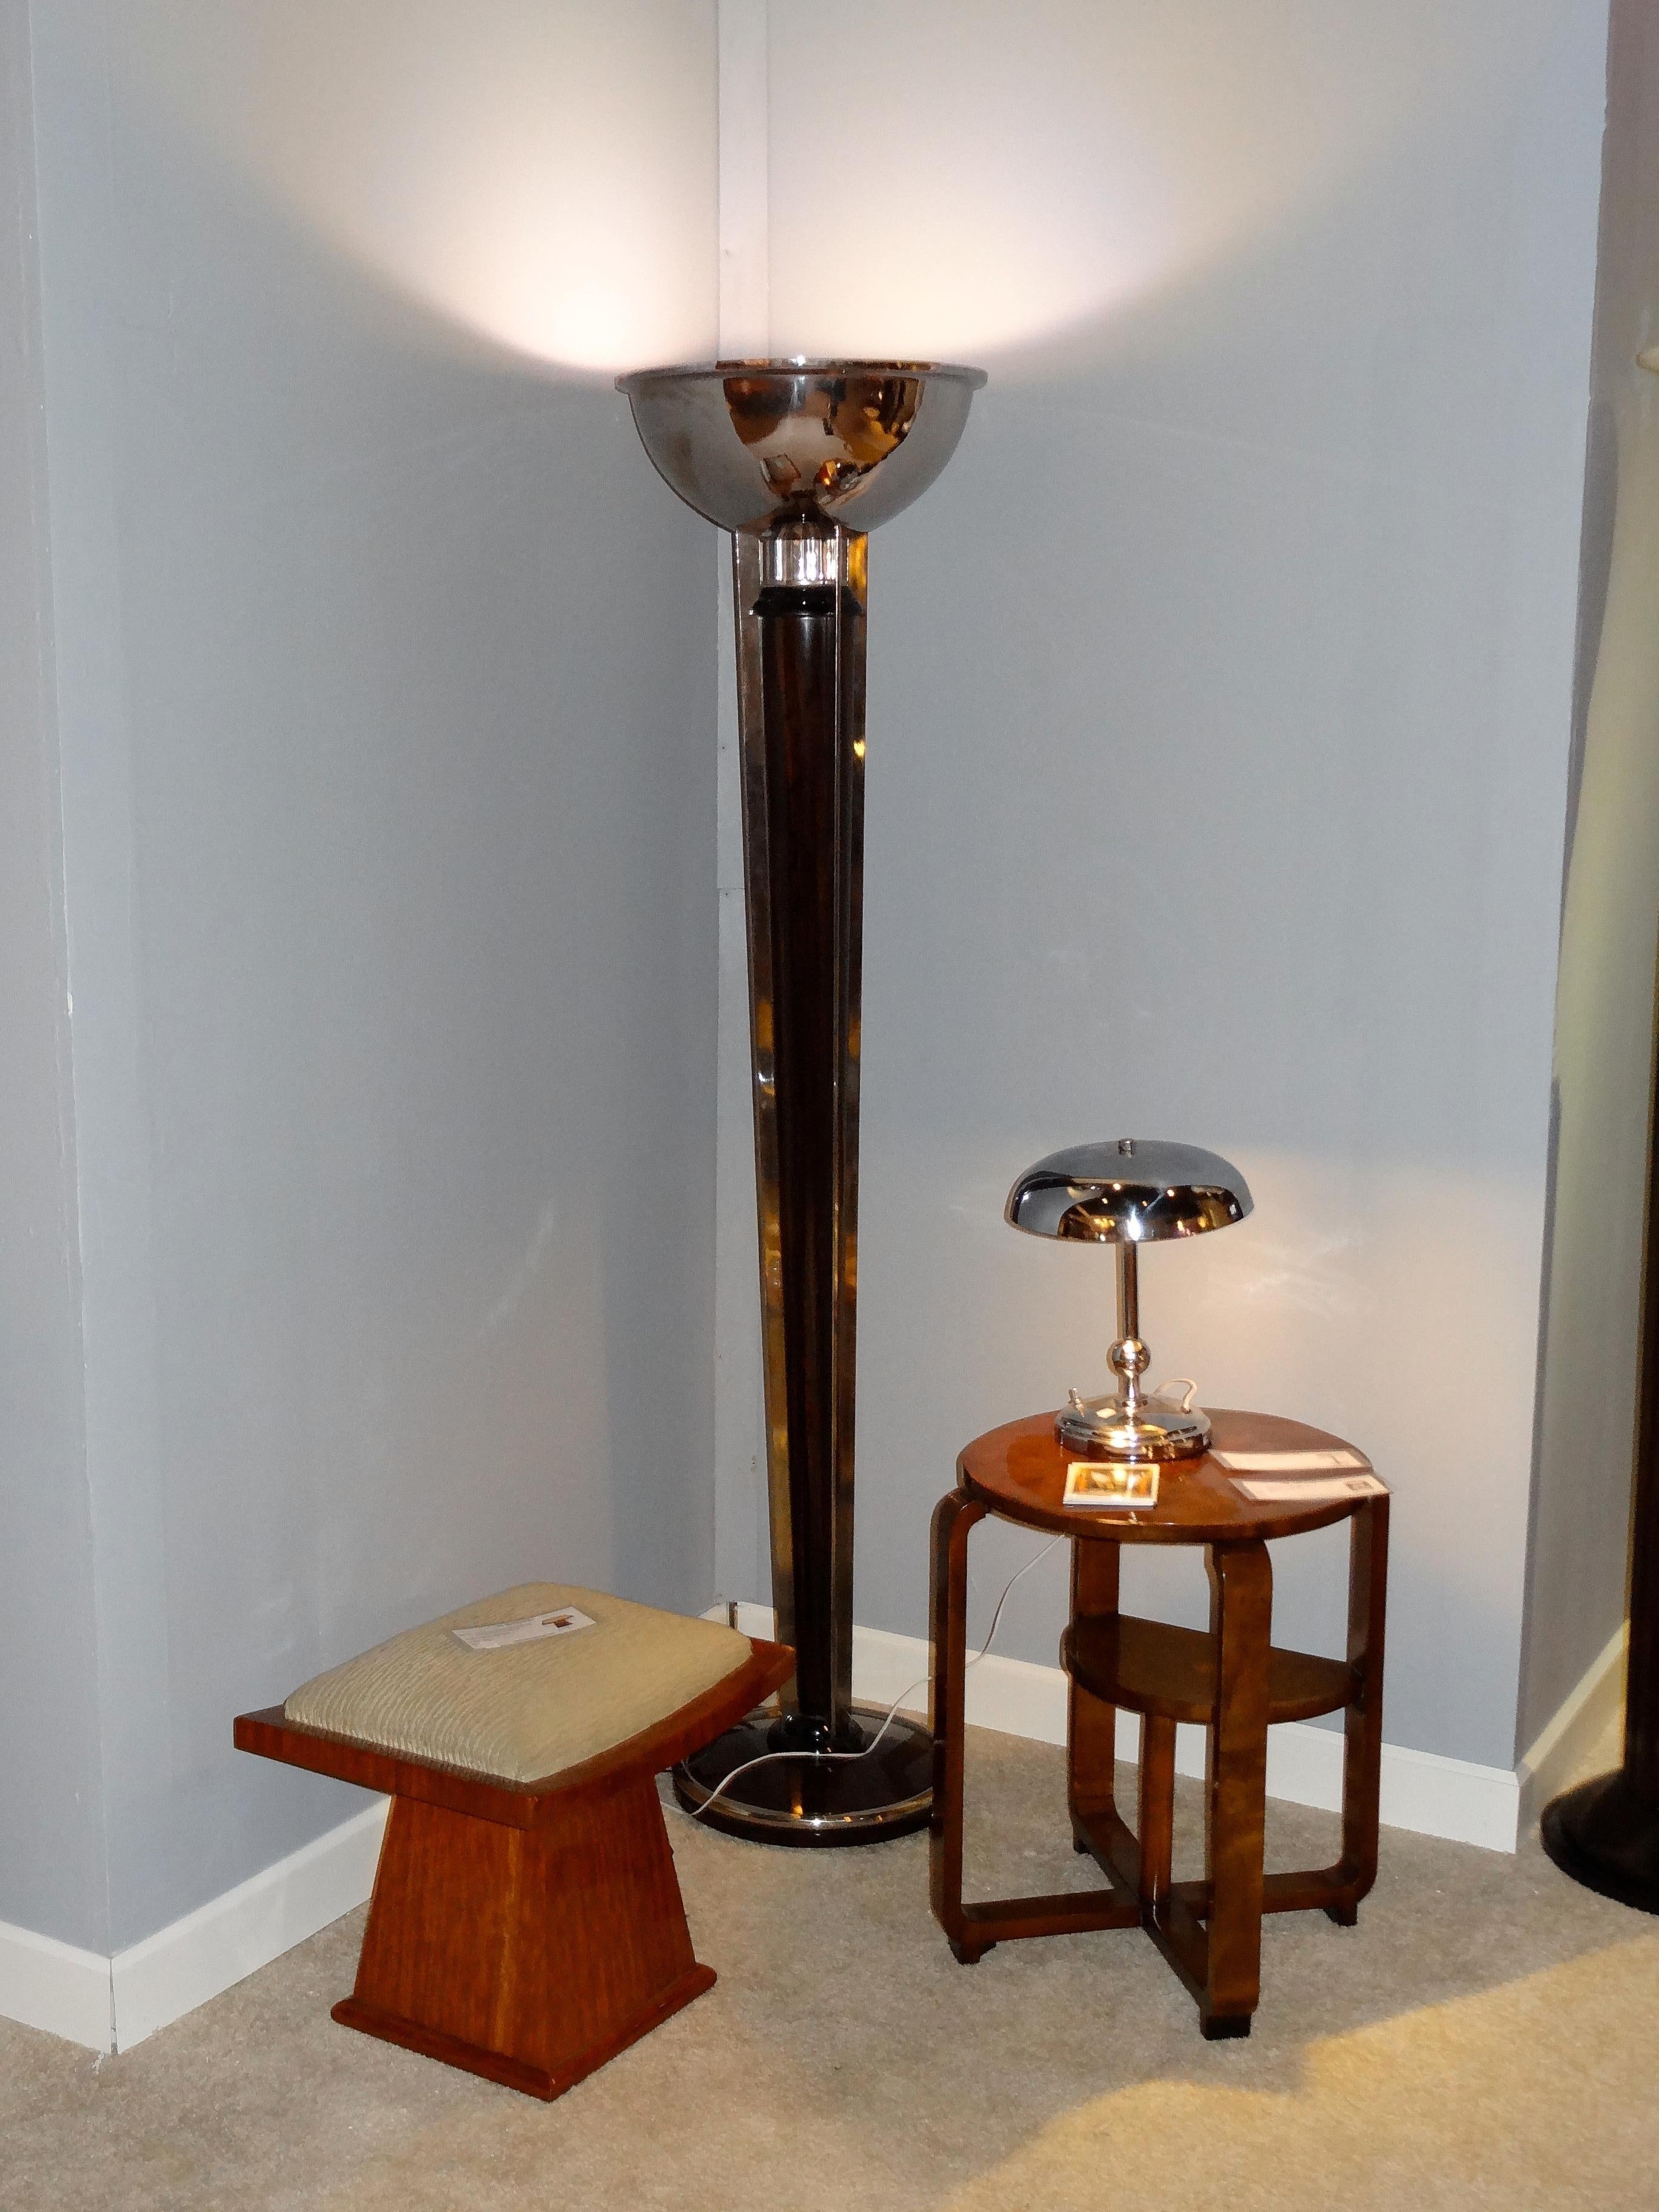 2 lampadaires Art Déco

Matériaux : bois, verre, chrome
France
1930
Vous voulez vivre dans l'âge d'or, ce sont les lampadaires dont votre projet a besoin.
Nous sommes spécialisés dans la vente de styles Art Déco et Art Nouveau depuis 1982.
En